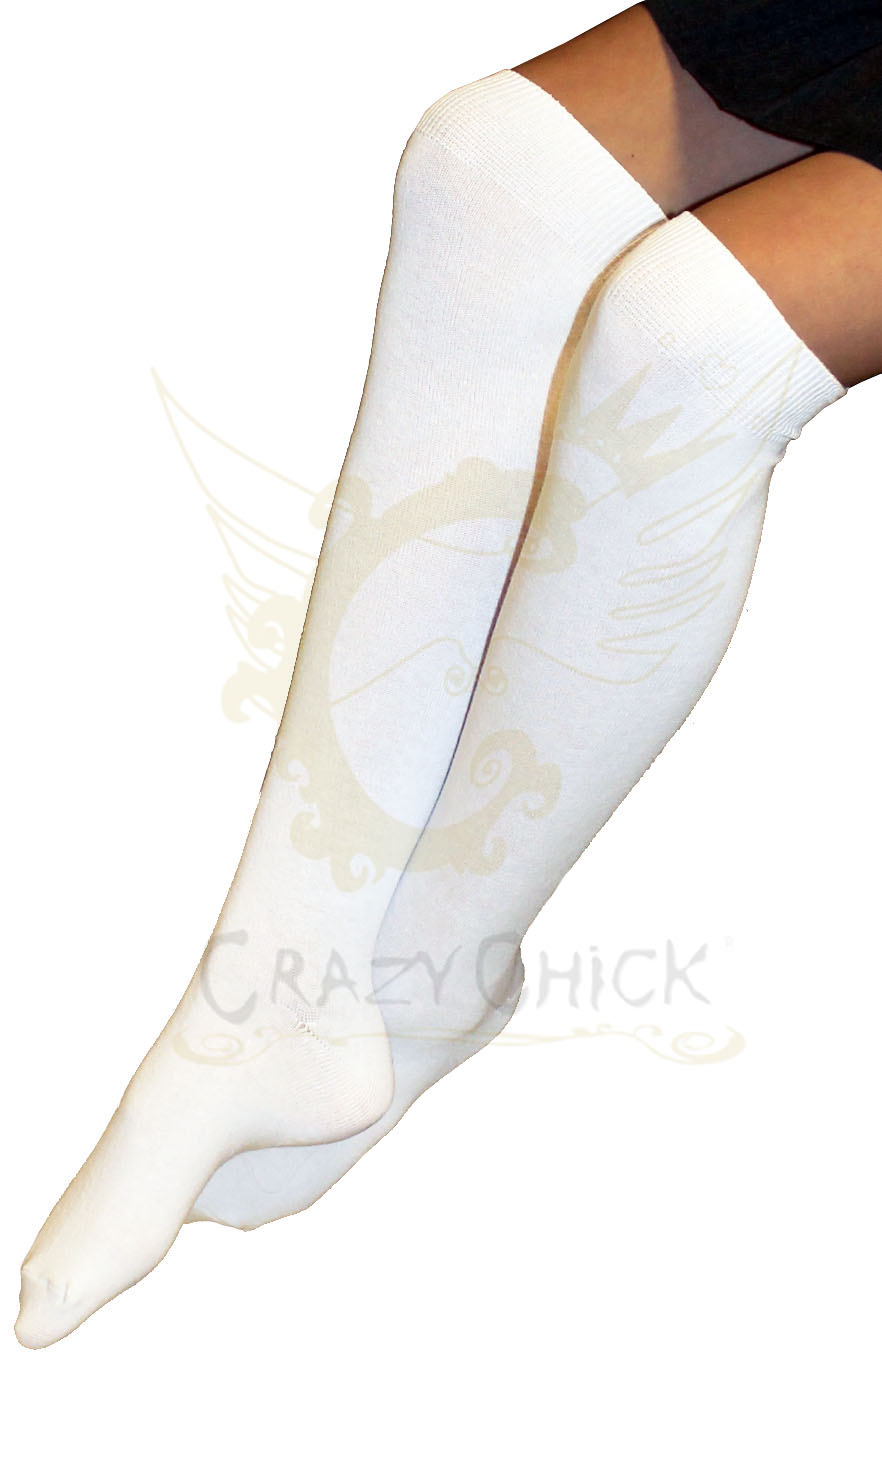 Crazy Chick Girls Knee High Socks White (12pairs)